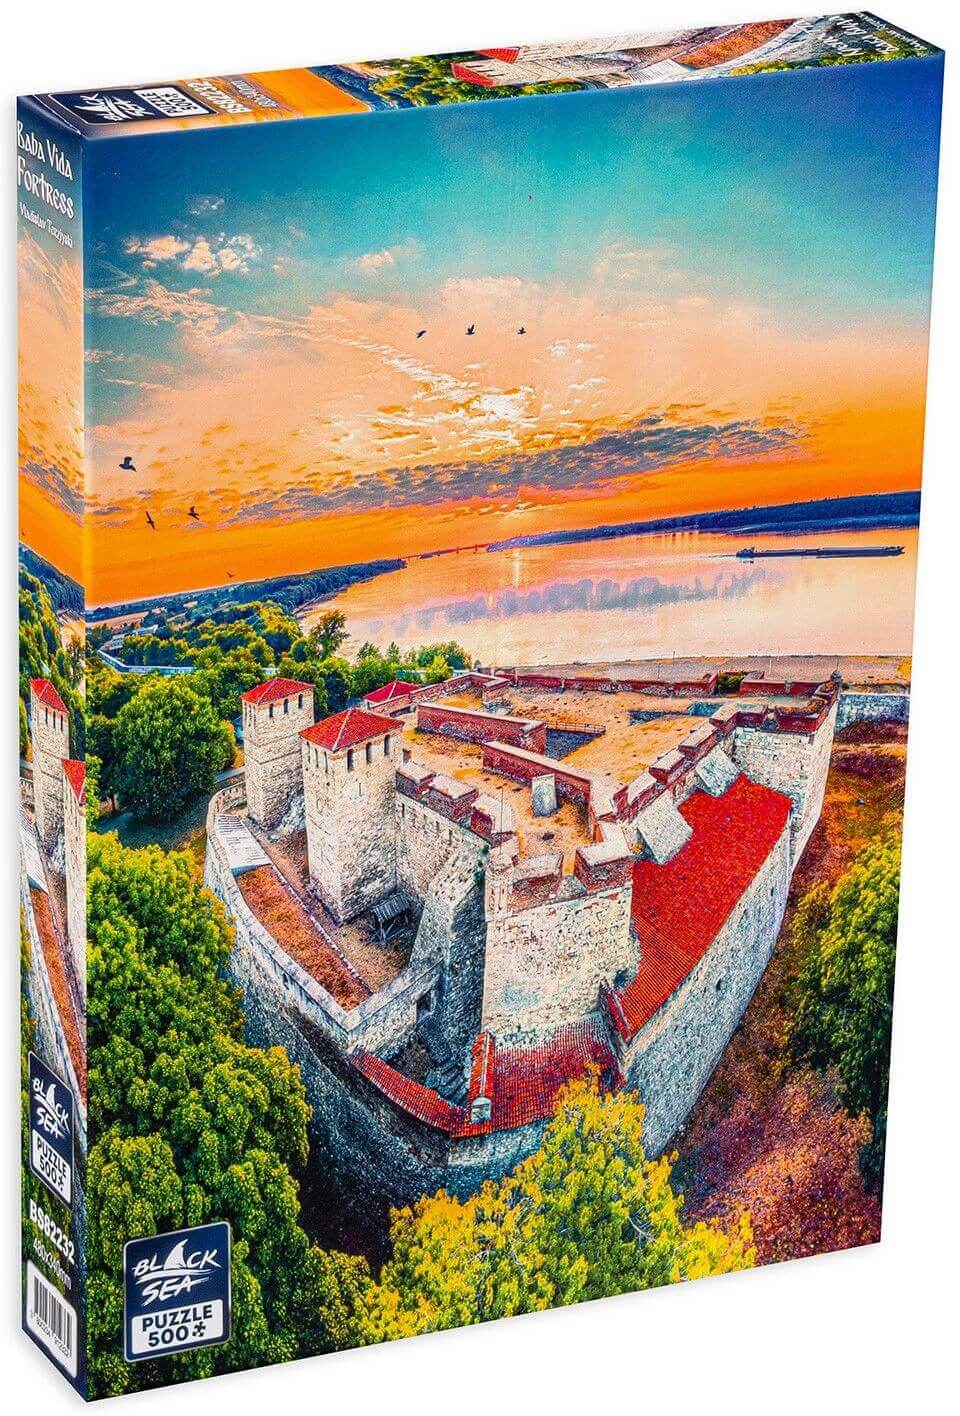 Puzzle Black Sea 500 pieces - Baba Vida Fortress